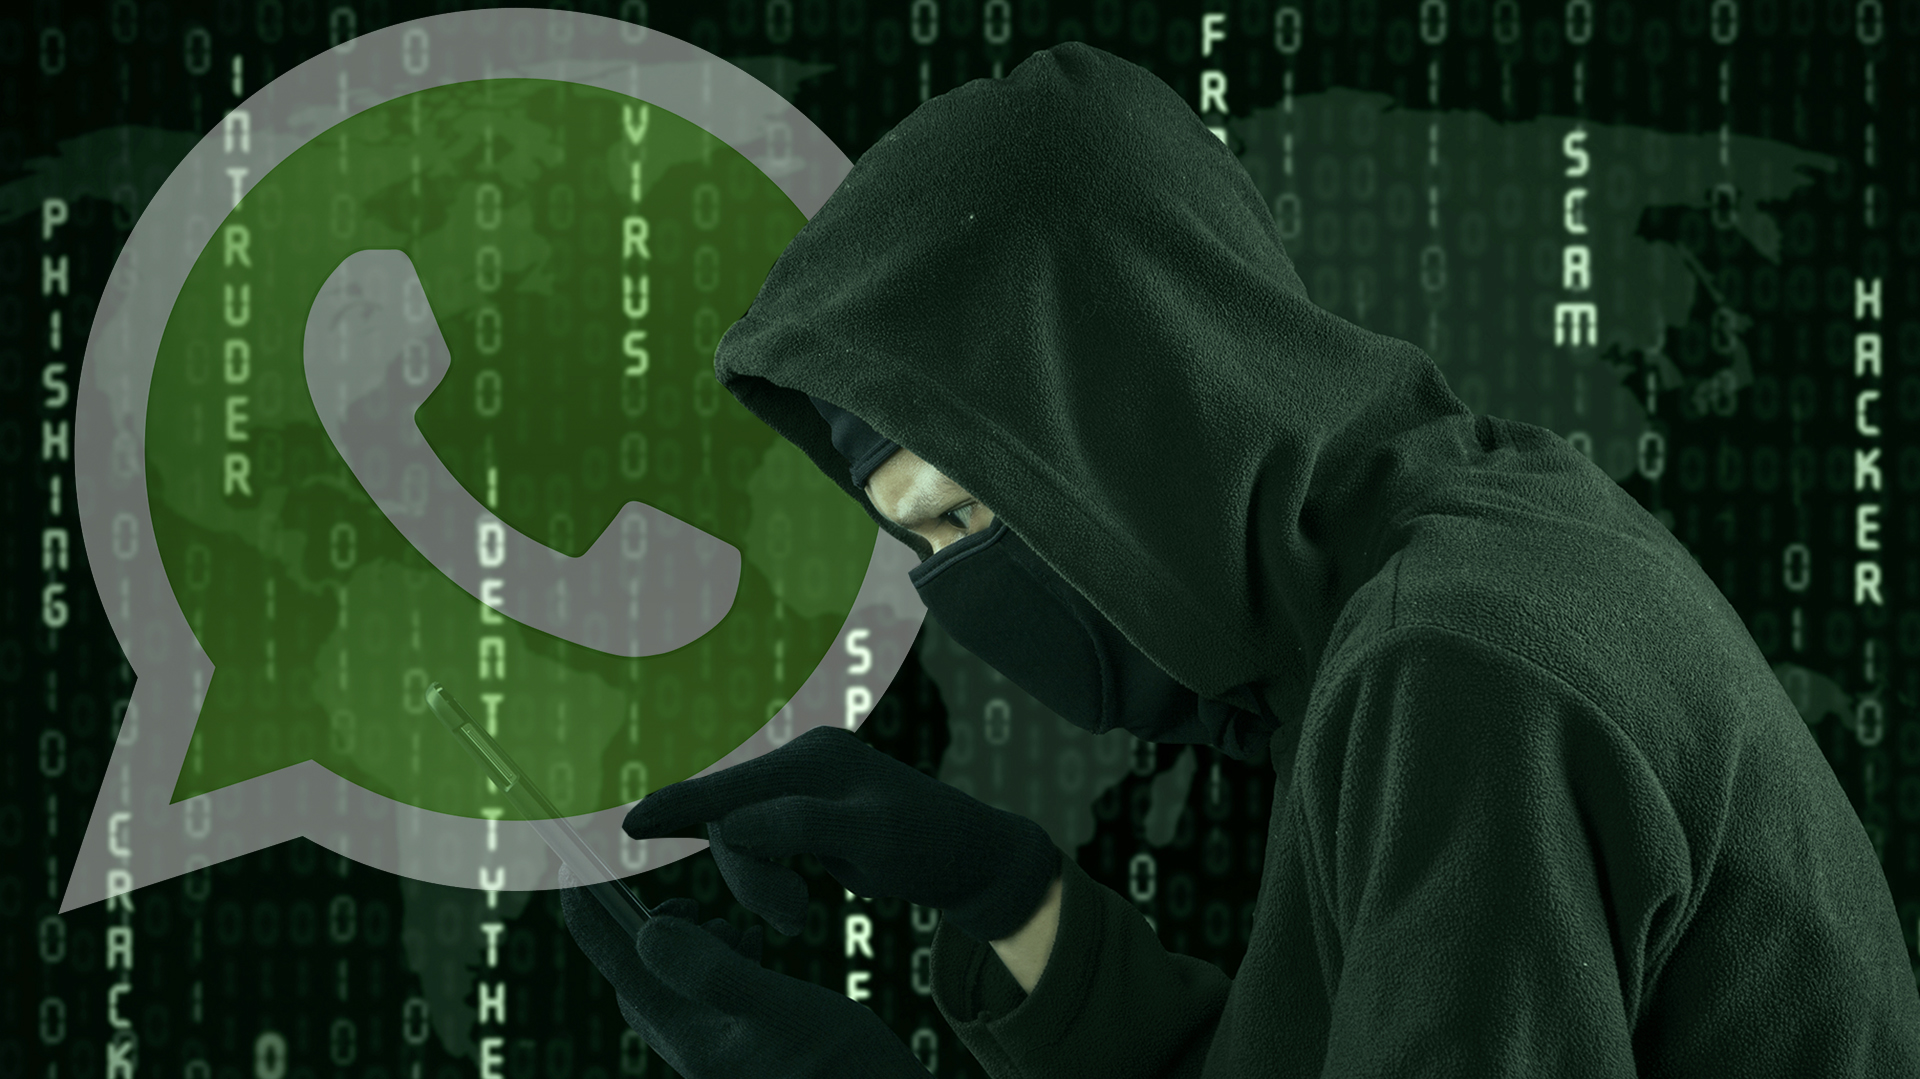 Por medio de un correo electrónico, los ciberdelincuentes buscan robar la información personal de las personas. (IStock)